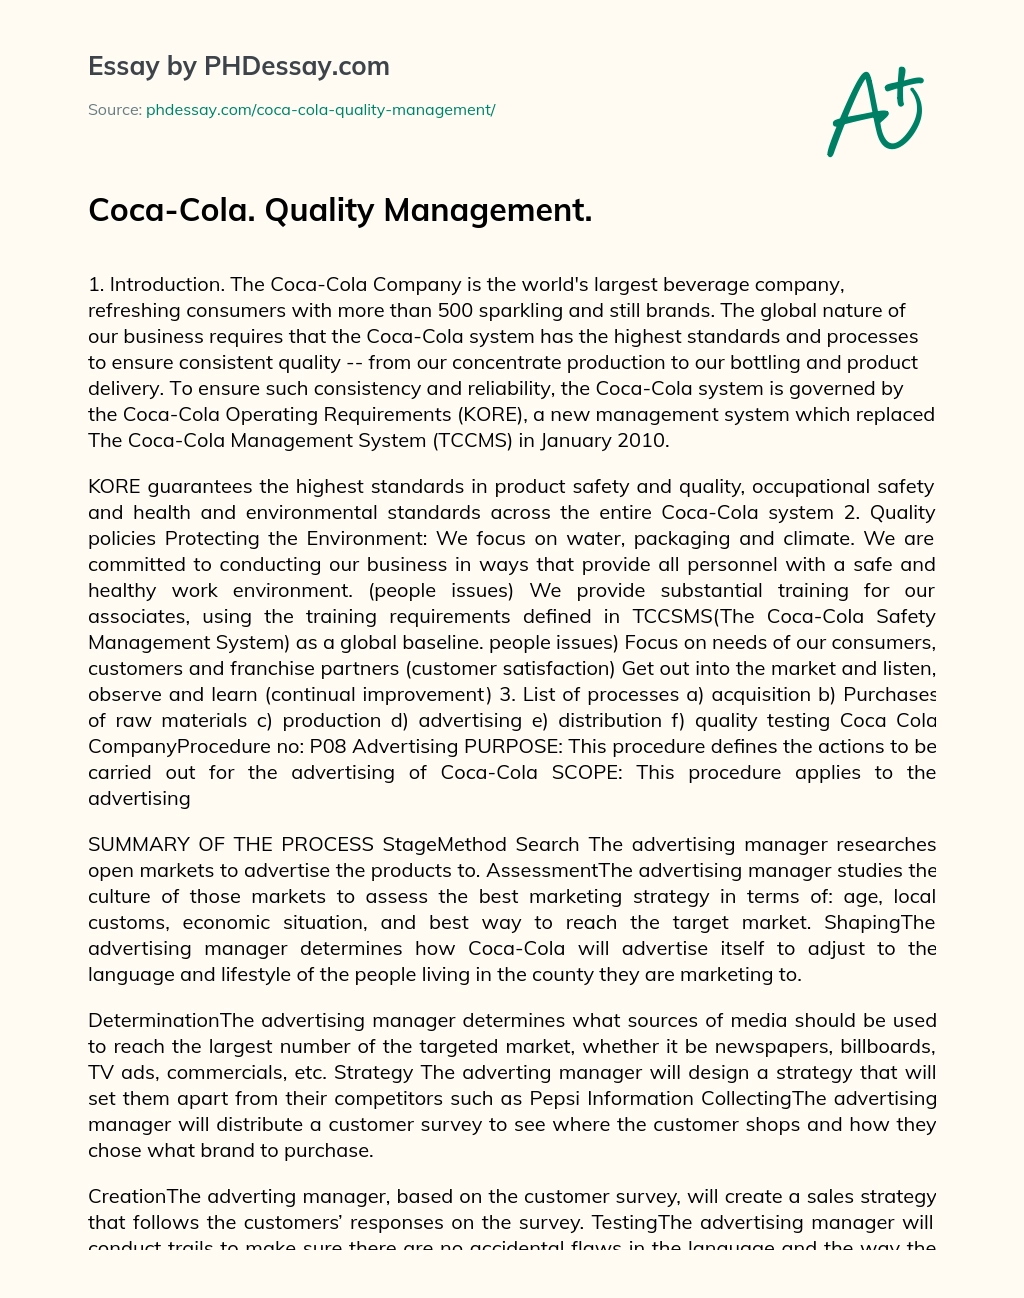 Coca-Cola. Quality Management. essay